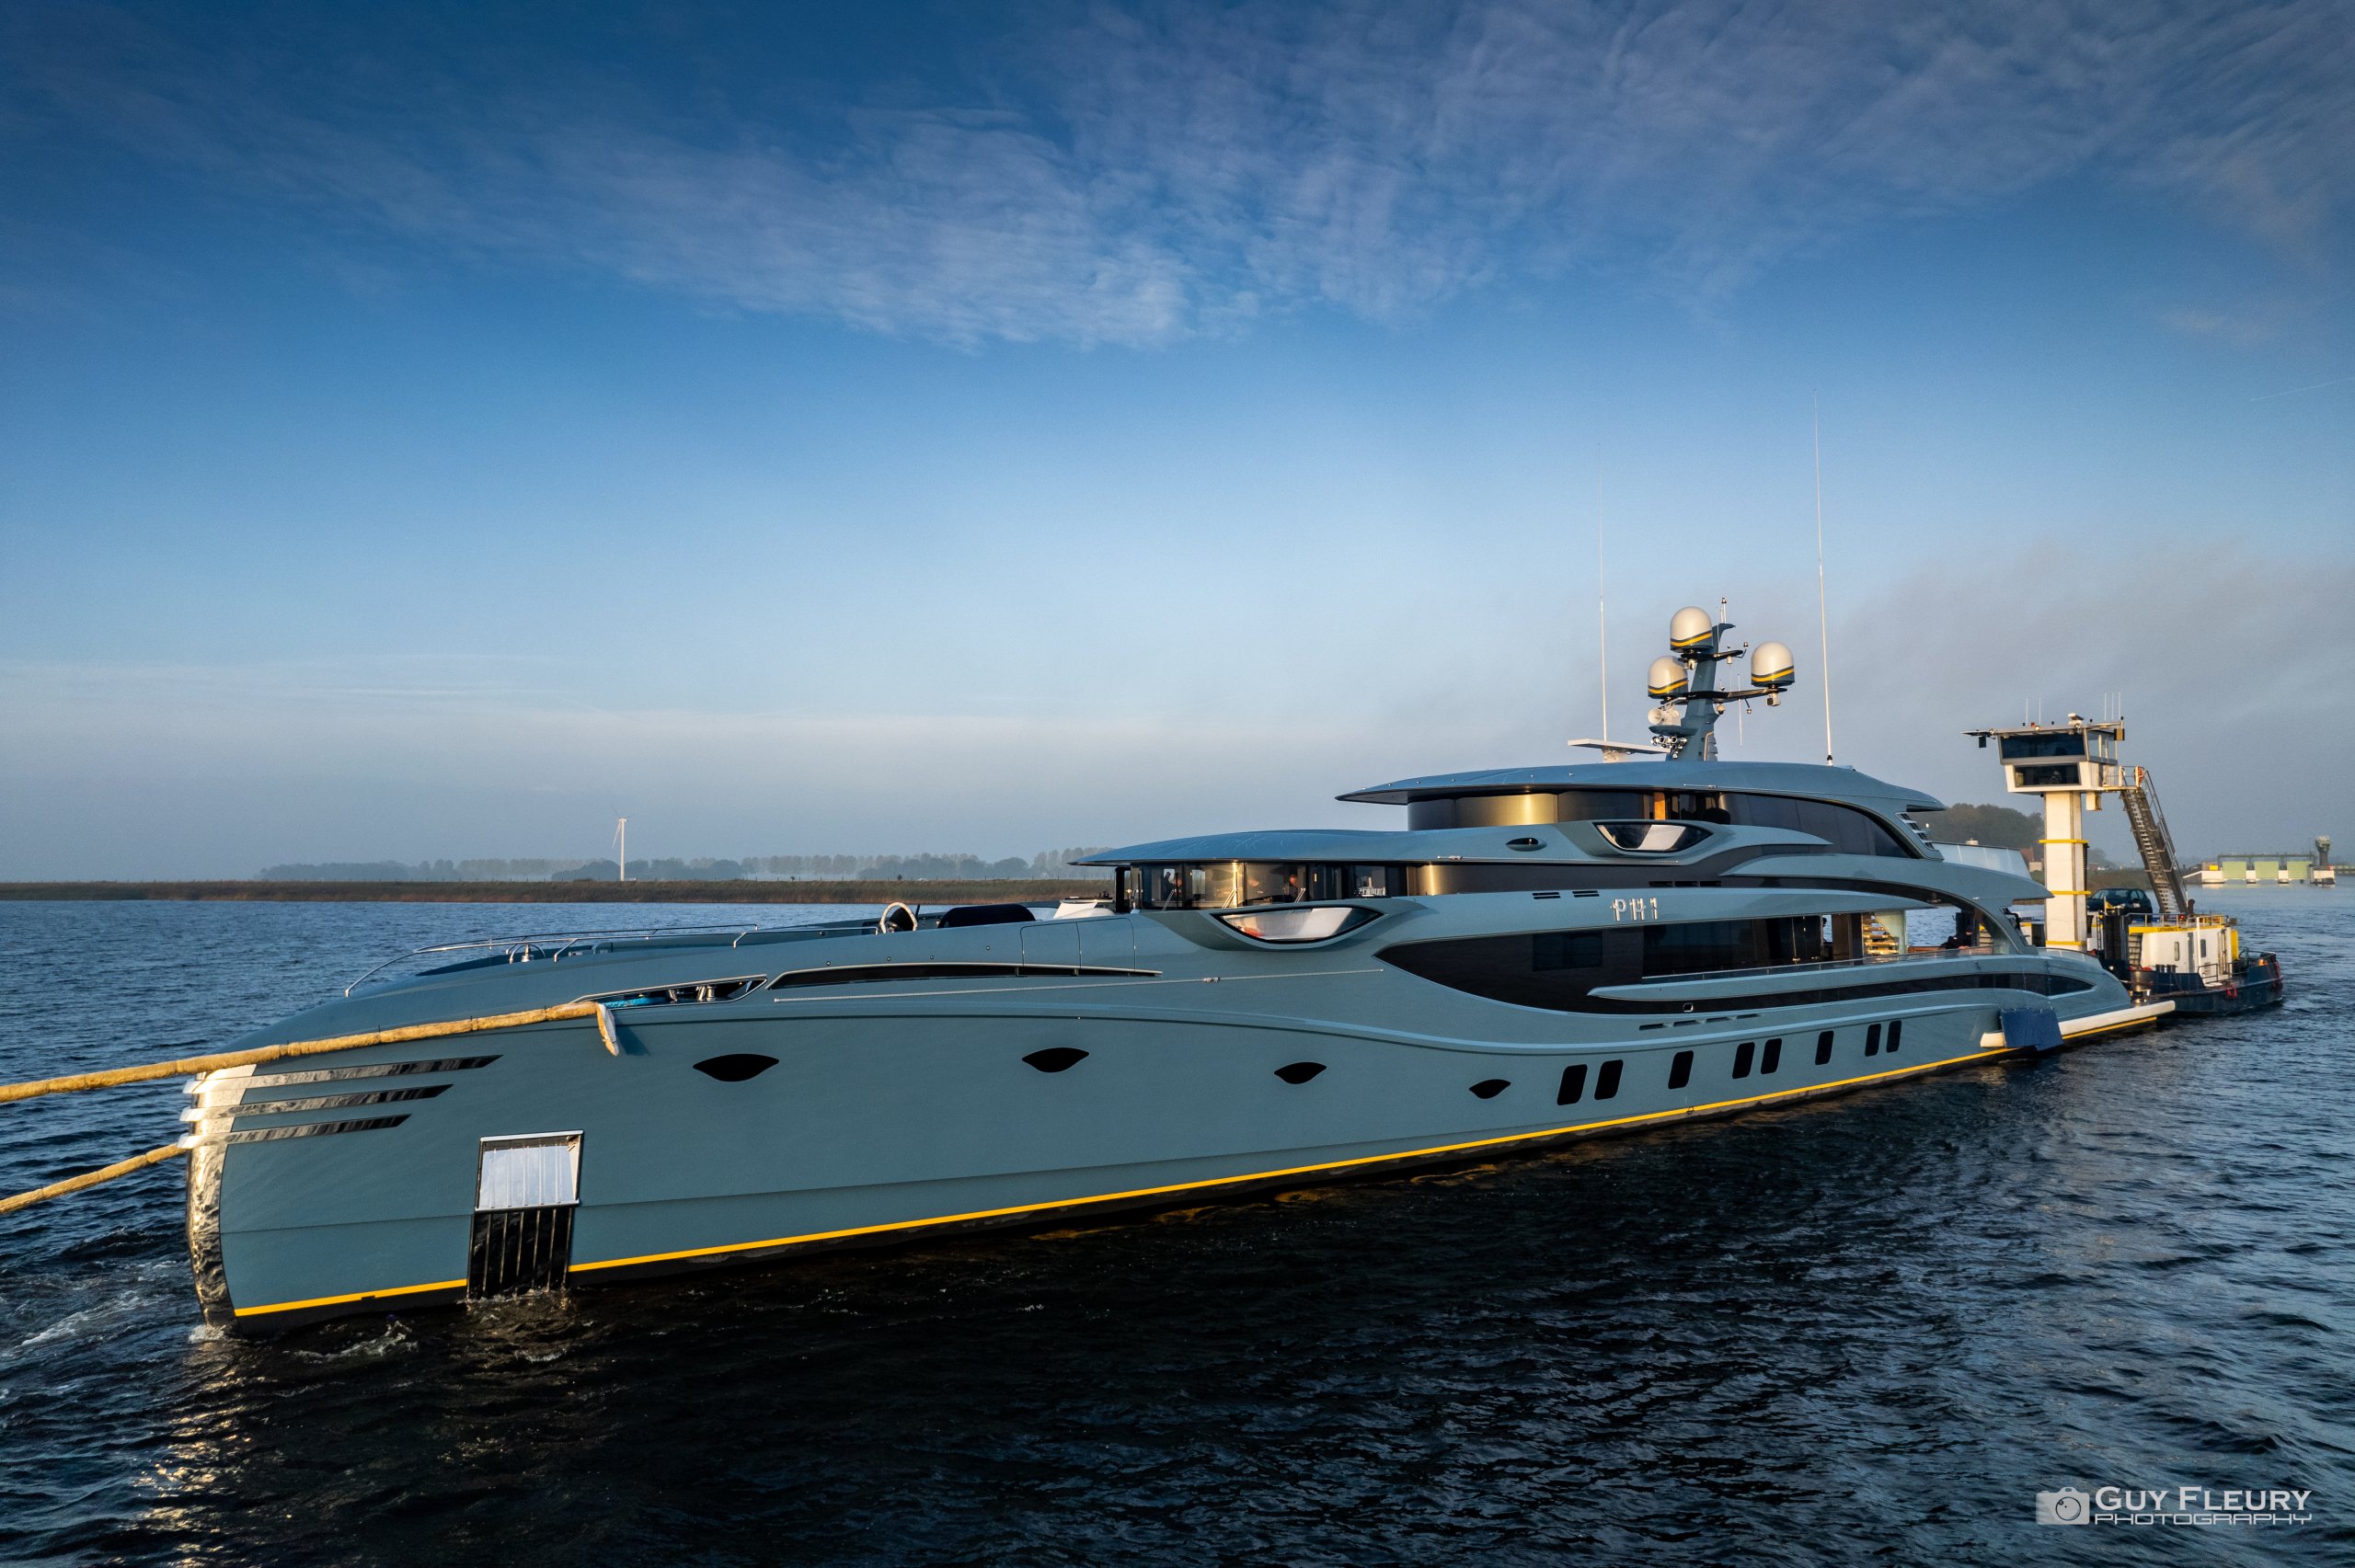 PHI Yacht - Royal Huisman - 2021 - Propriétaire Russian Millionaire